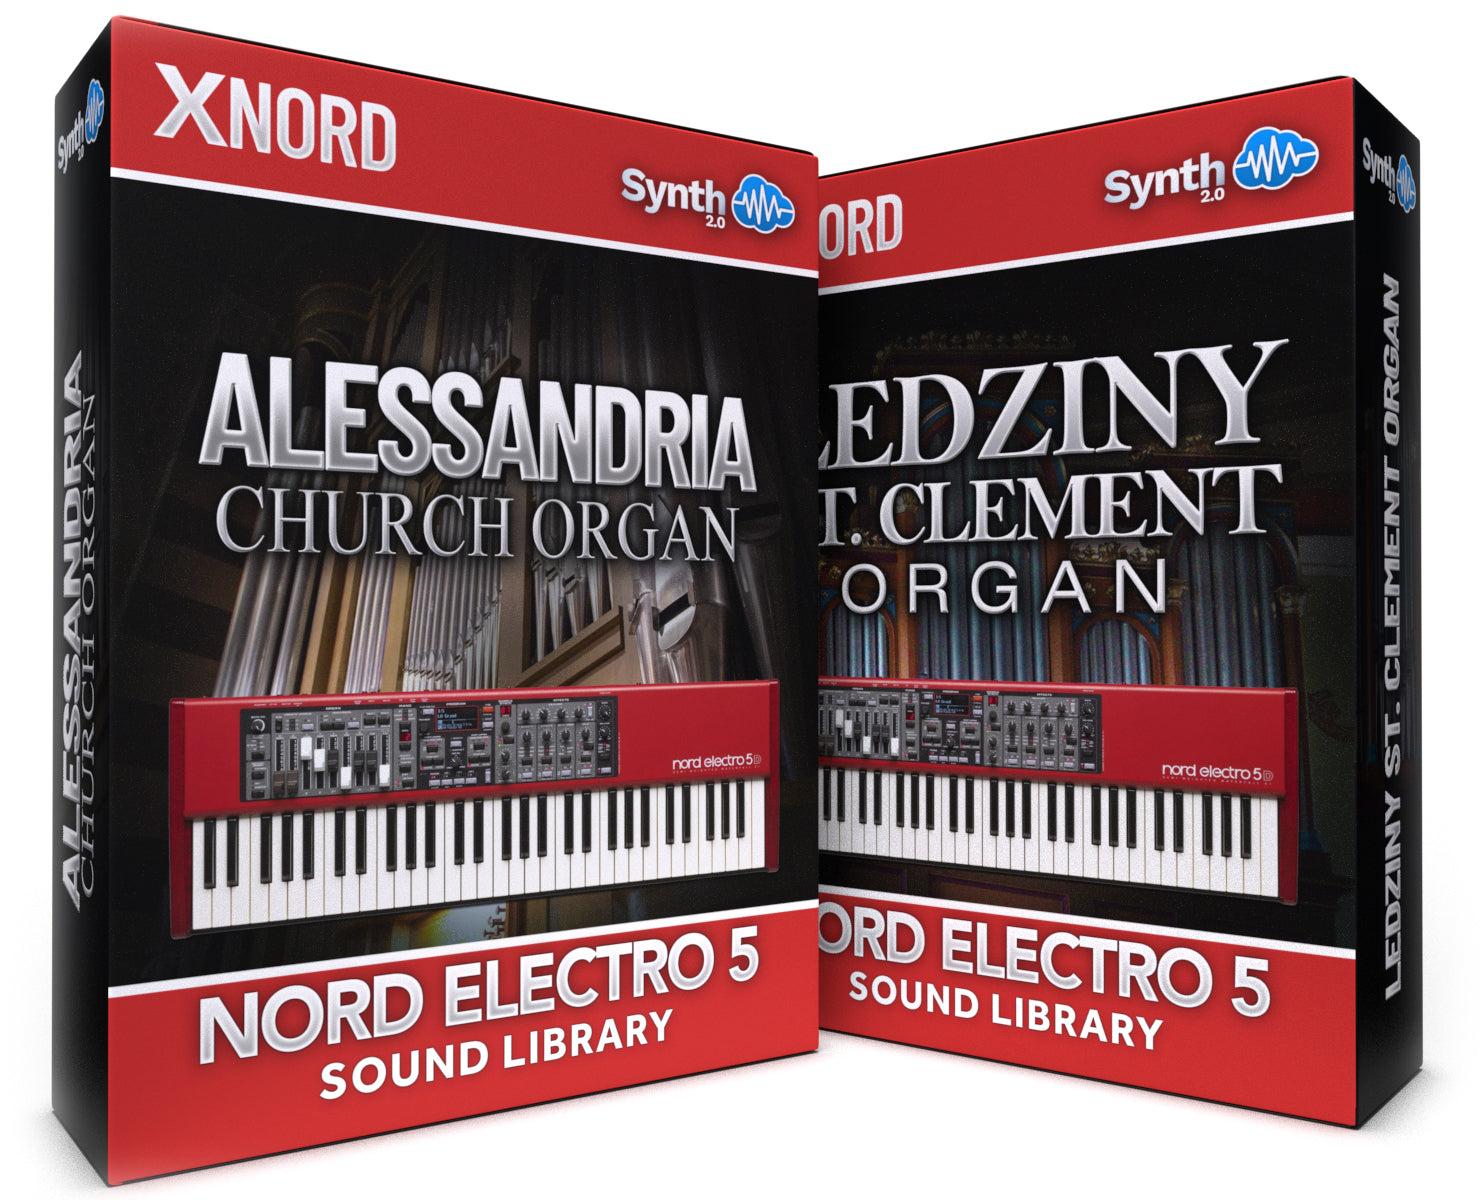 RCL014 - ( Bundle ) - Alessandria Organ + Ledziny, St. Clement Organ - Nord Electro 5